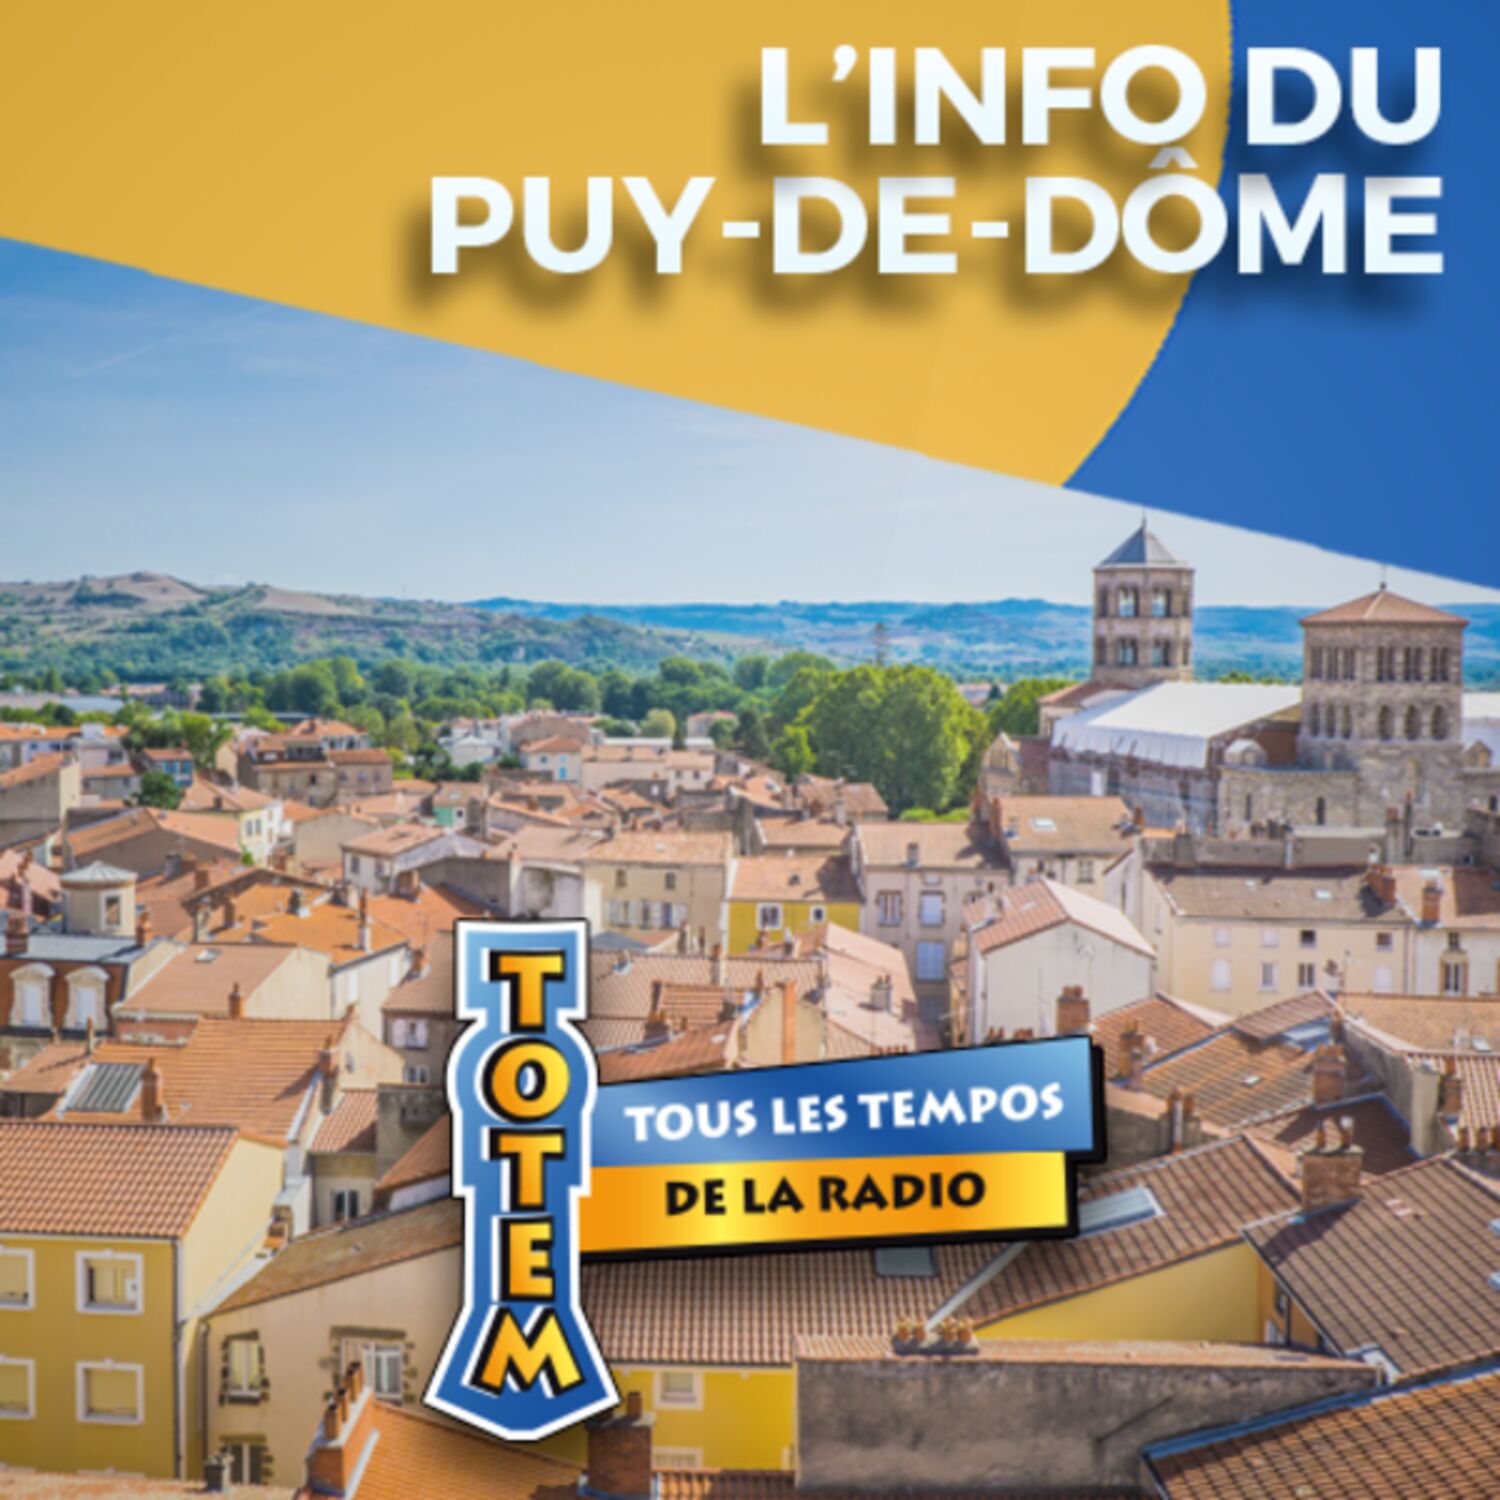 L'info du Puy-de-Dôme du 04/05/23 à 11h59